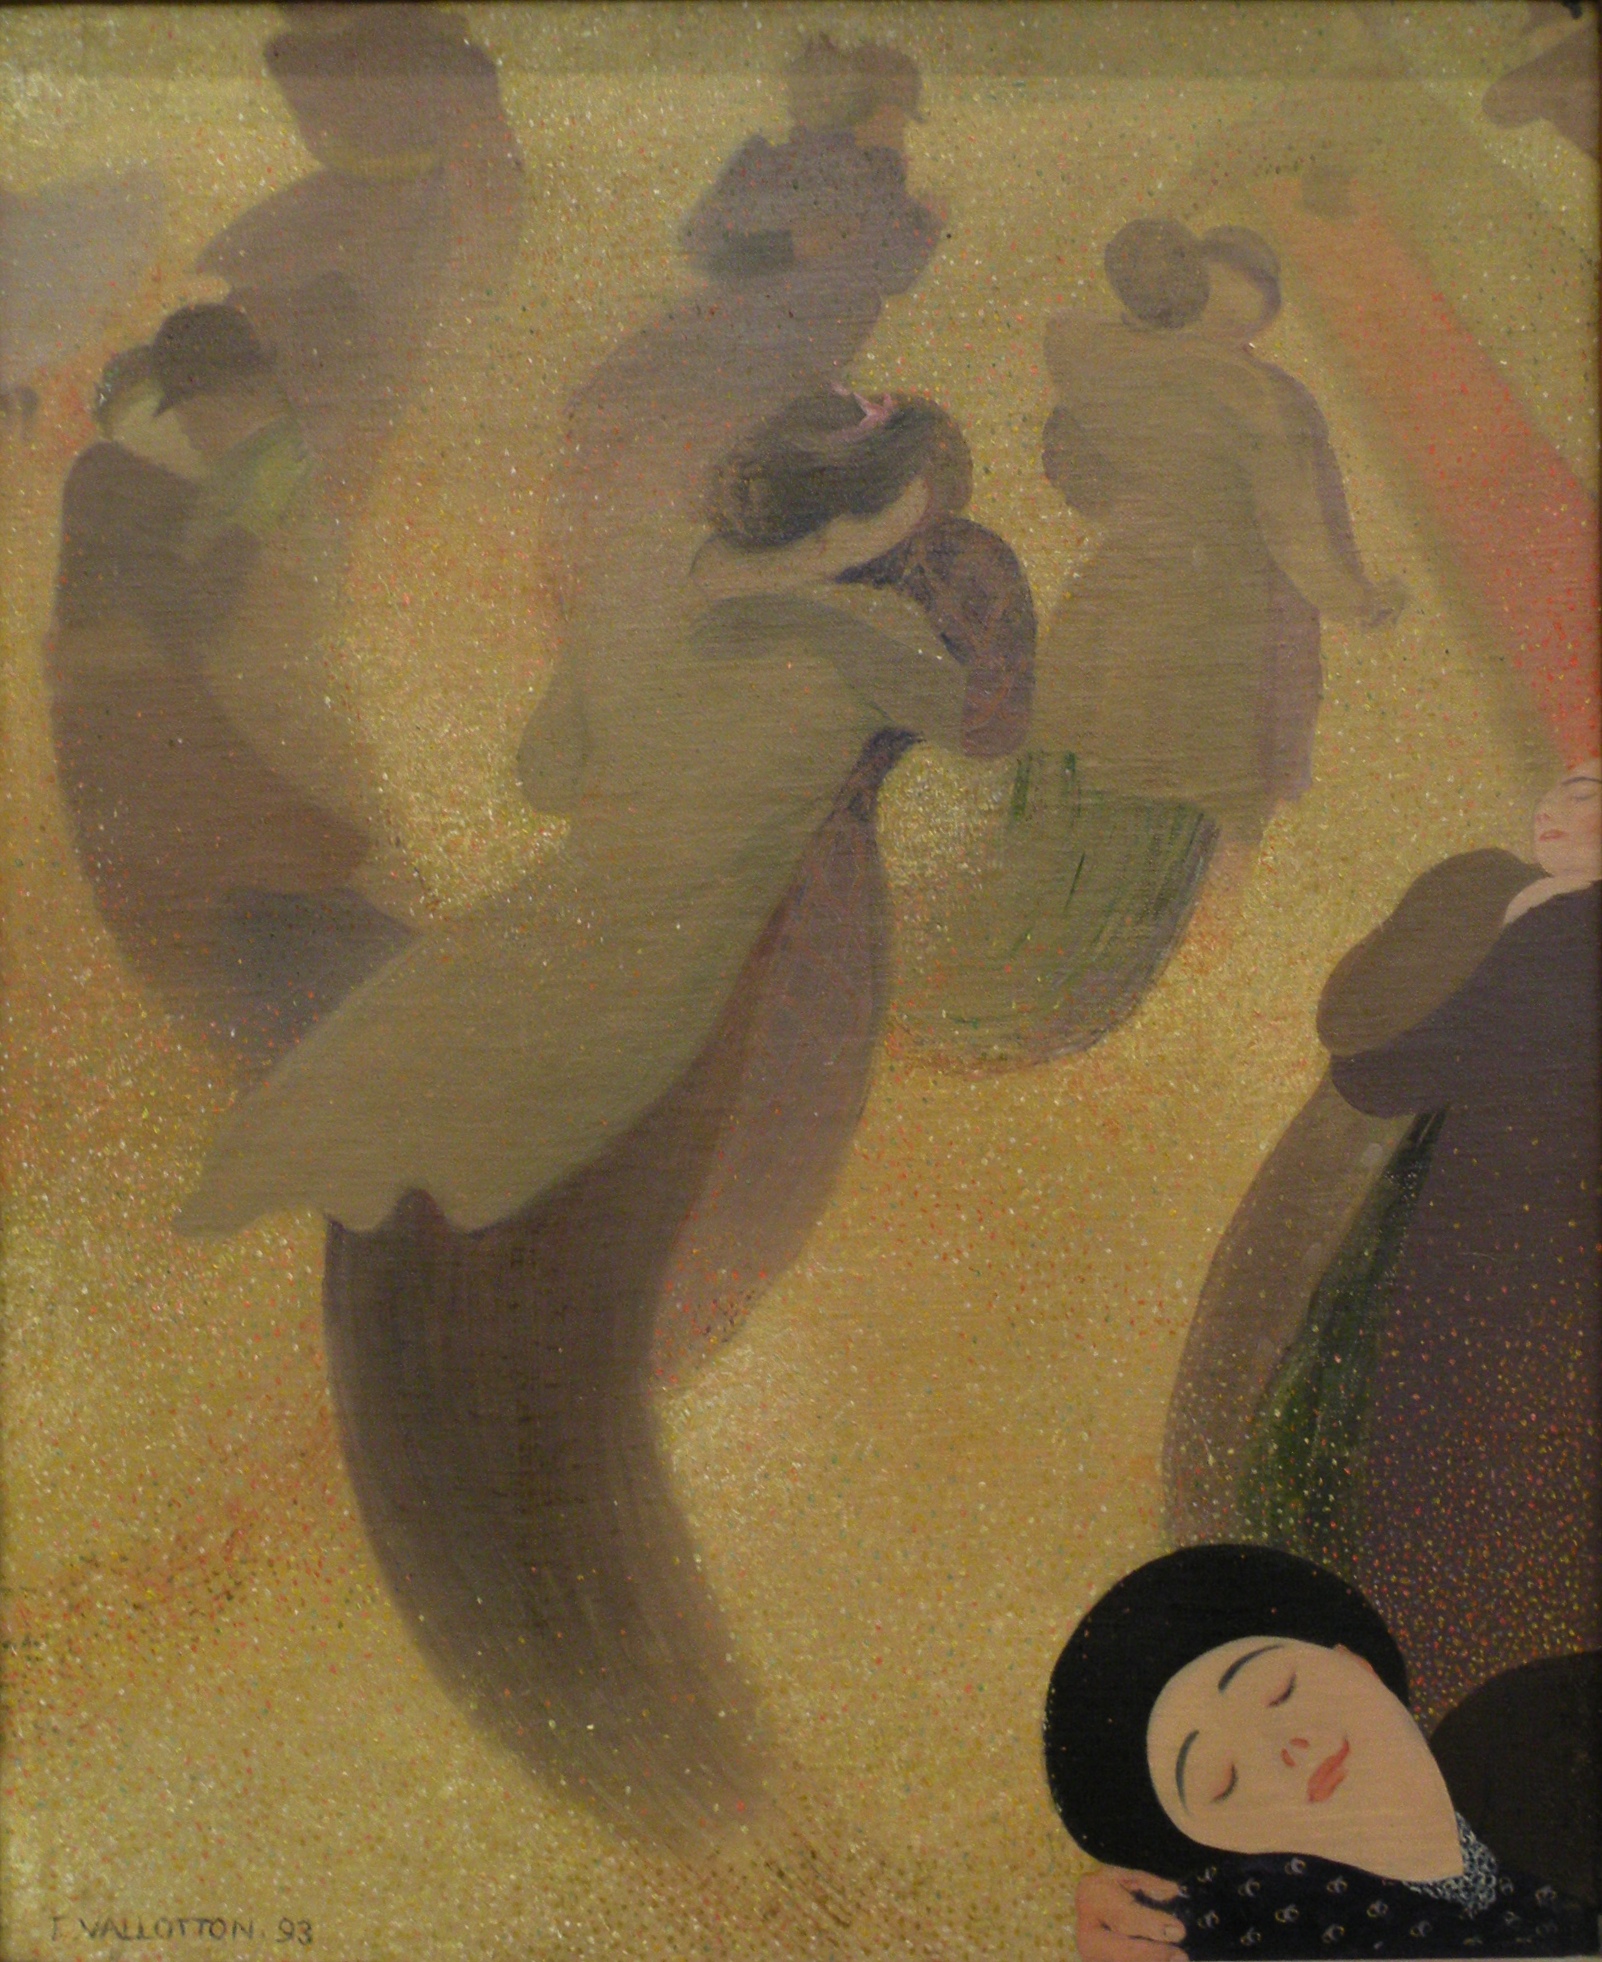 华尔兹 by 费利克斯 瓦洛顿 - 1893 - 50 x 61 cm 安德烈·马尔罗现代艺术博物馆